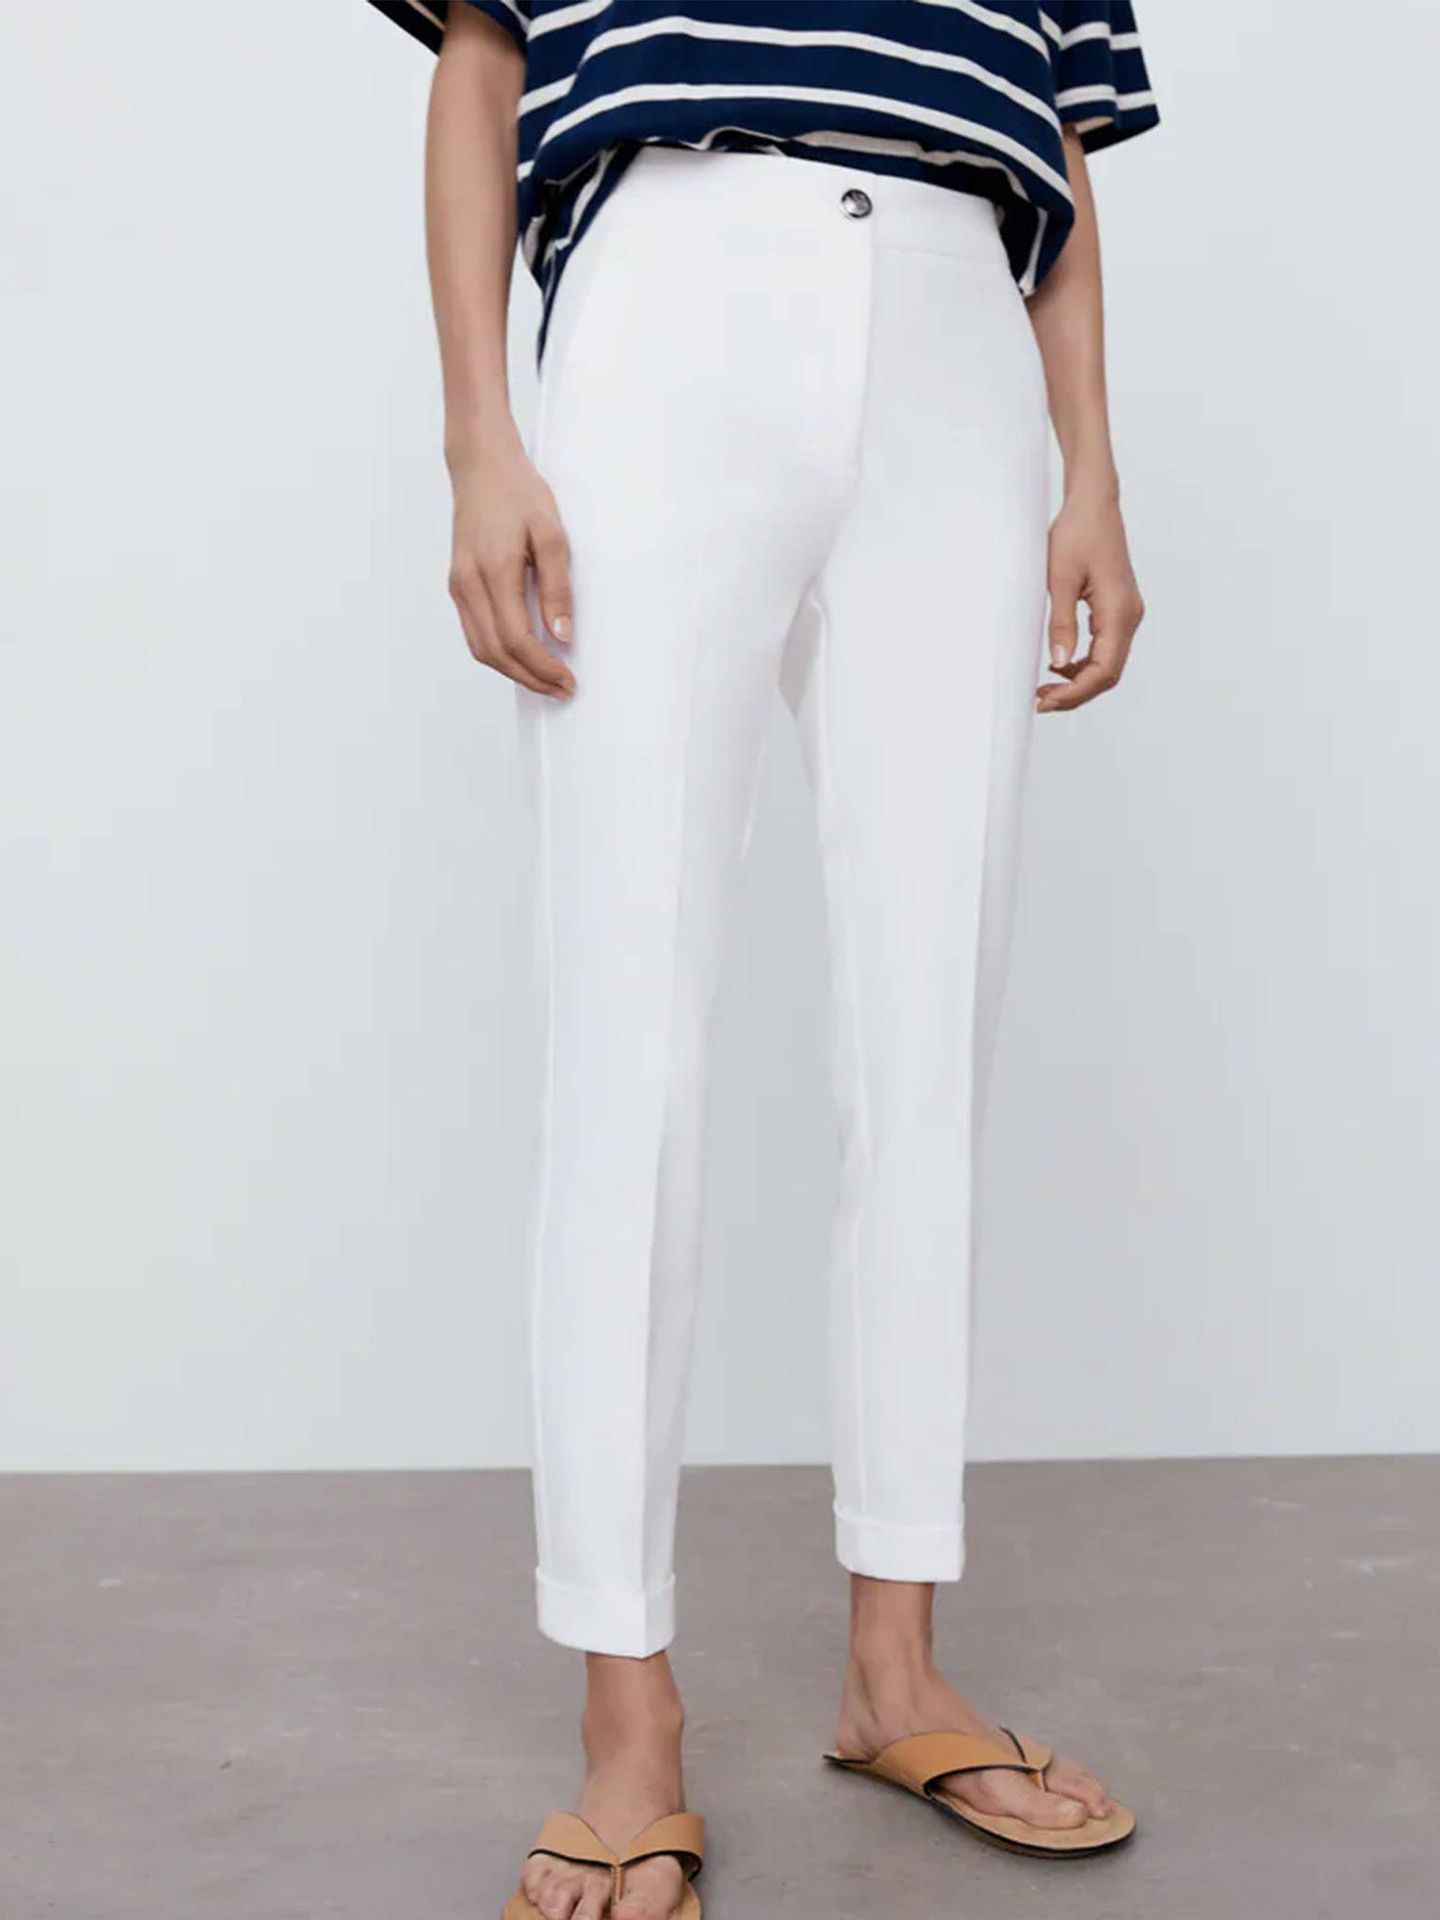 Pantalones blancos de Zara. (Cortesía)